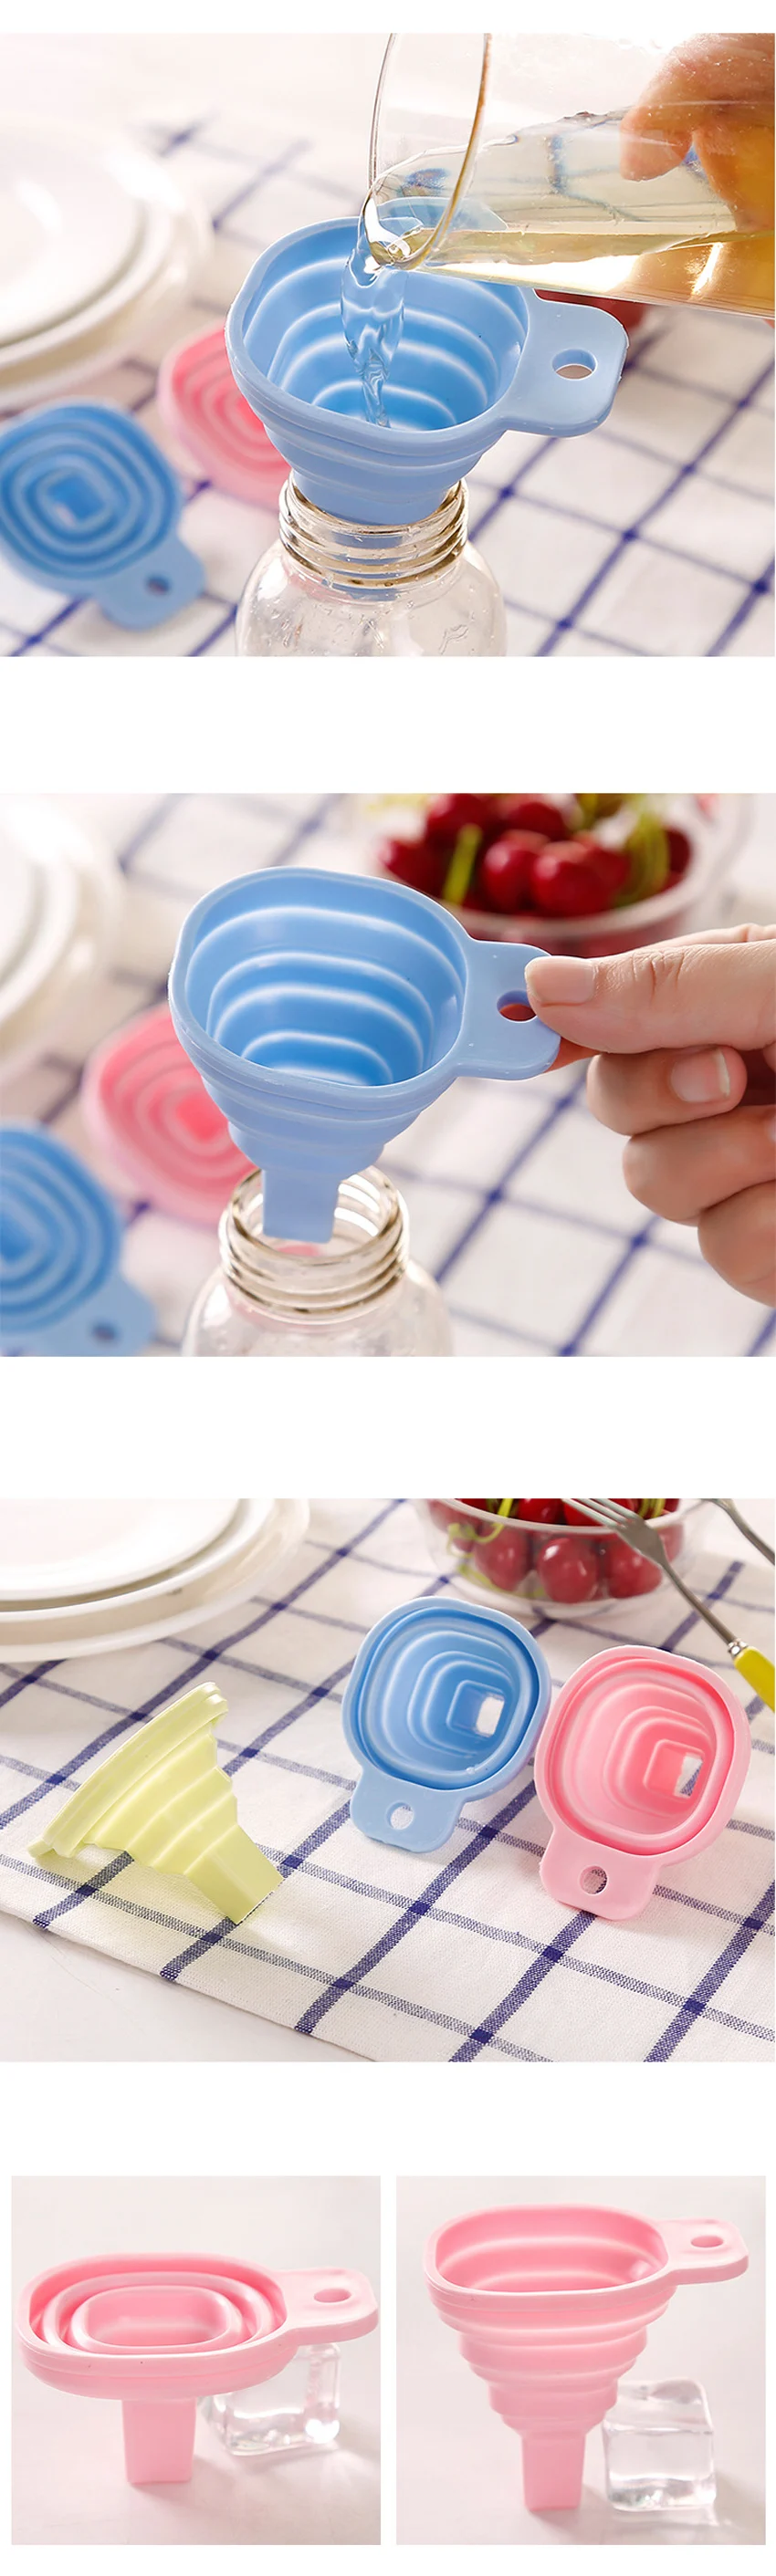 ERMAKOVA Складная воронка силиконовая Складная воронка для бутылки с водой Воронка Складная кухонная Воронка для жидкого порошка